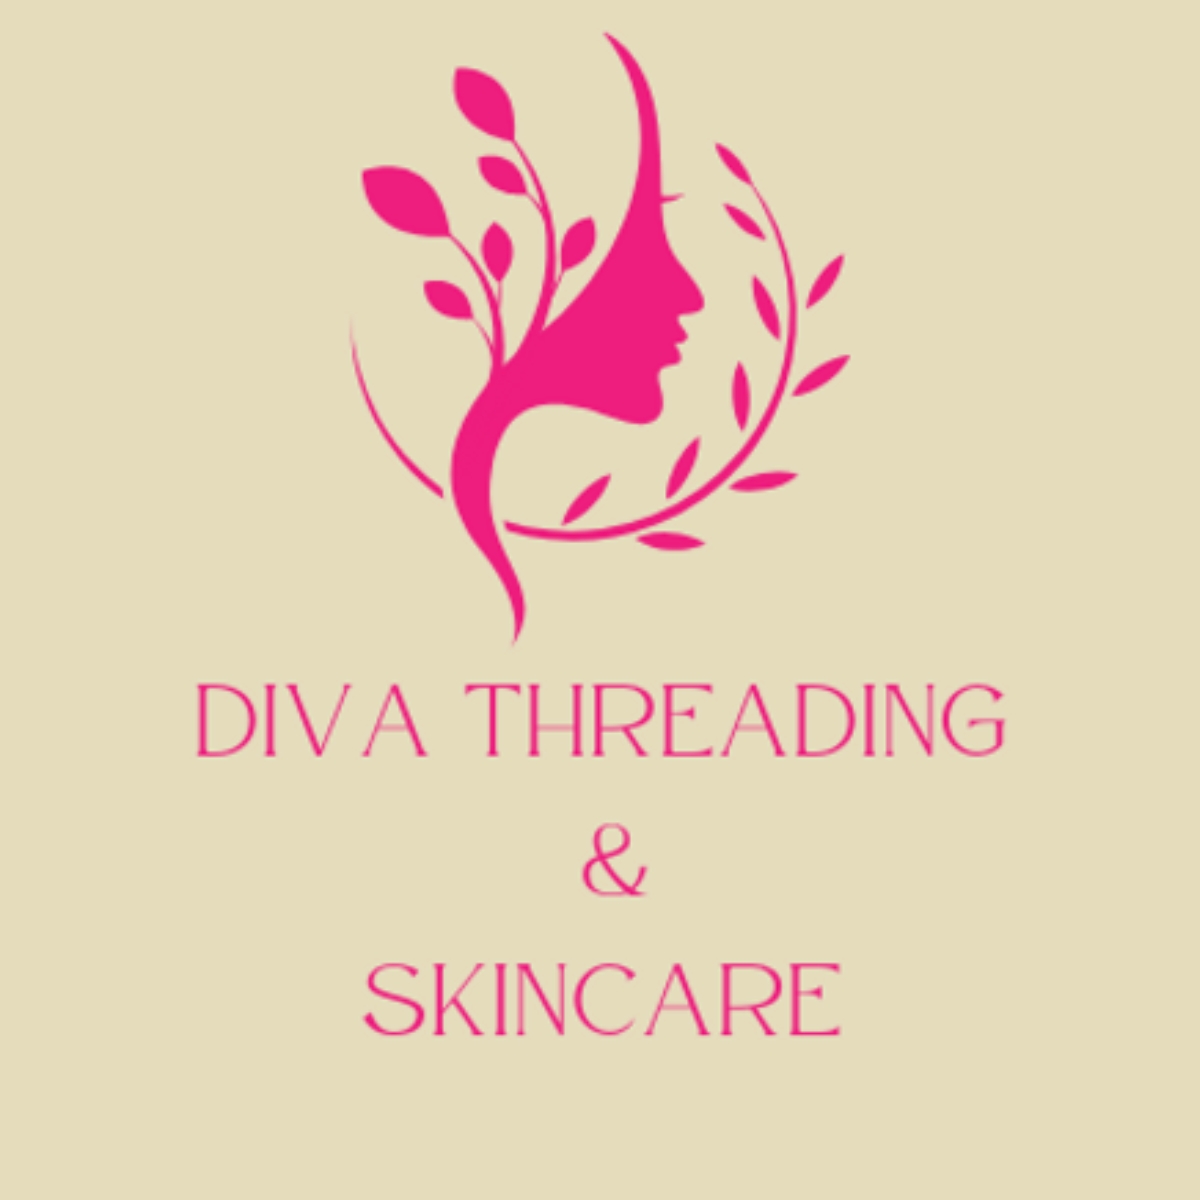 diva-threading-skincare-175.jpg